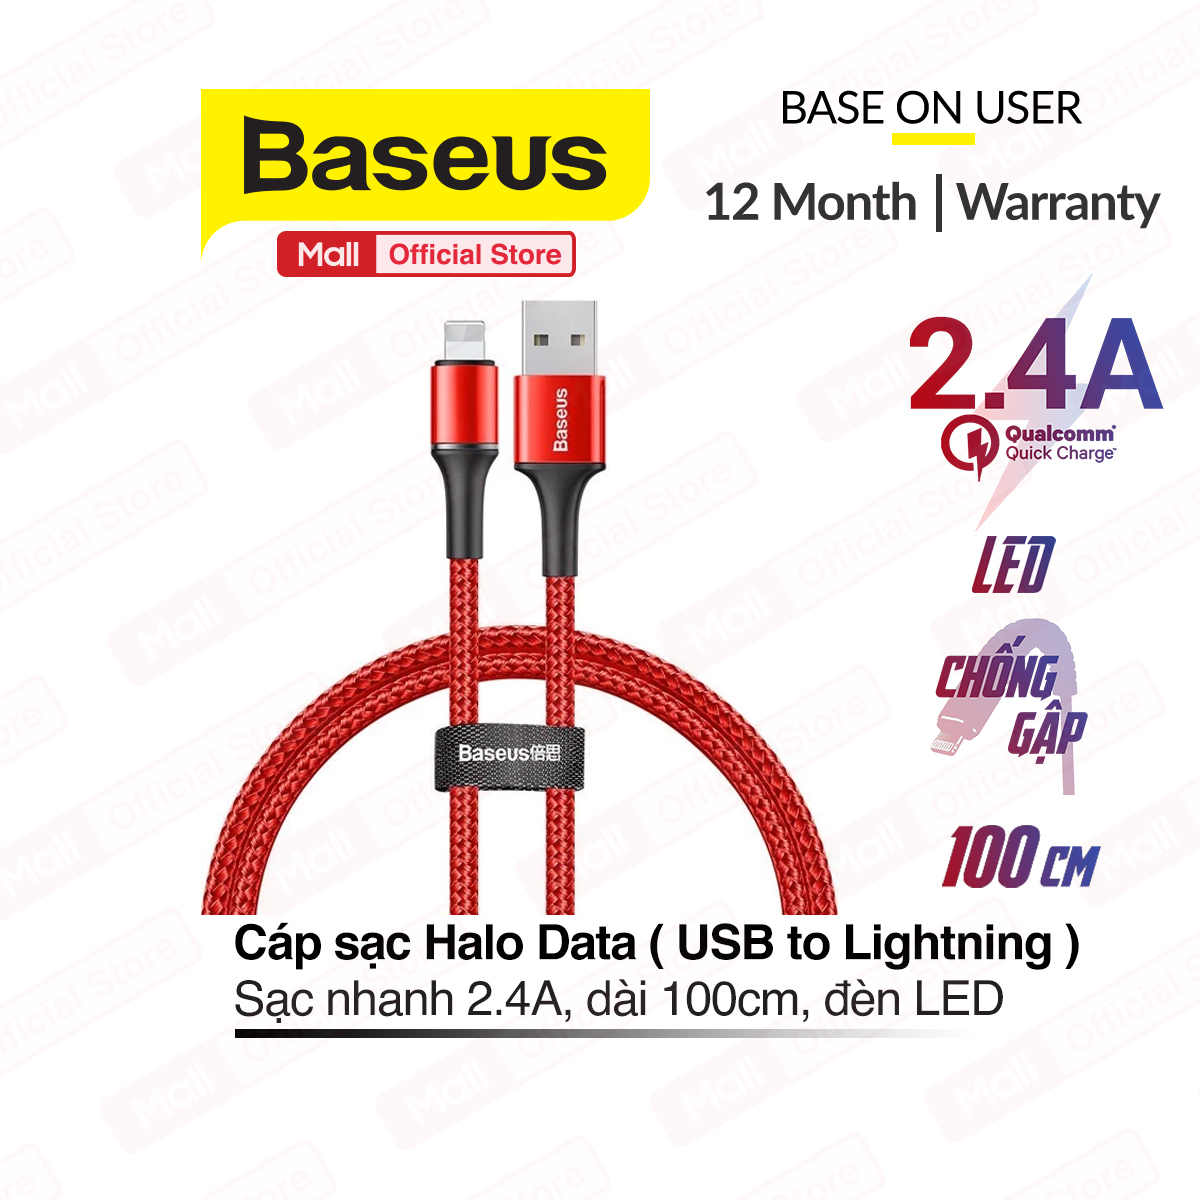 [ Mã giảm giá 60k cho đơn hàng từ 400k ] Cáp sạc Baseus Halo Data USB to Lightning dành cho iPhone/iPad (2.4A Fast Charge LED Light indicator) dài 1m